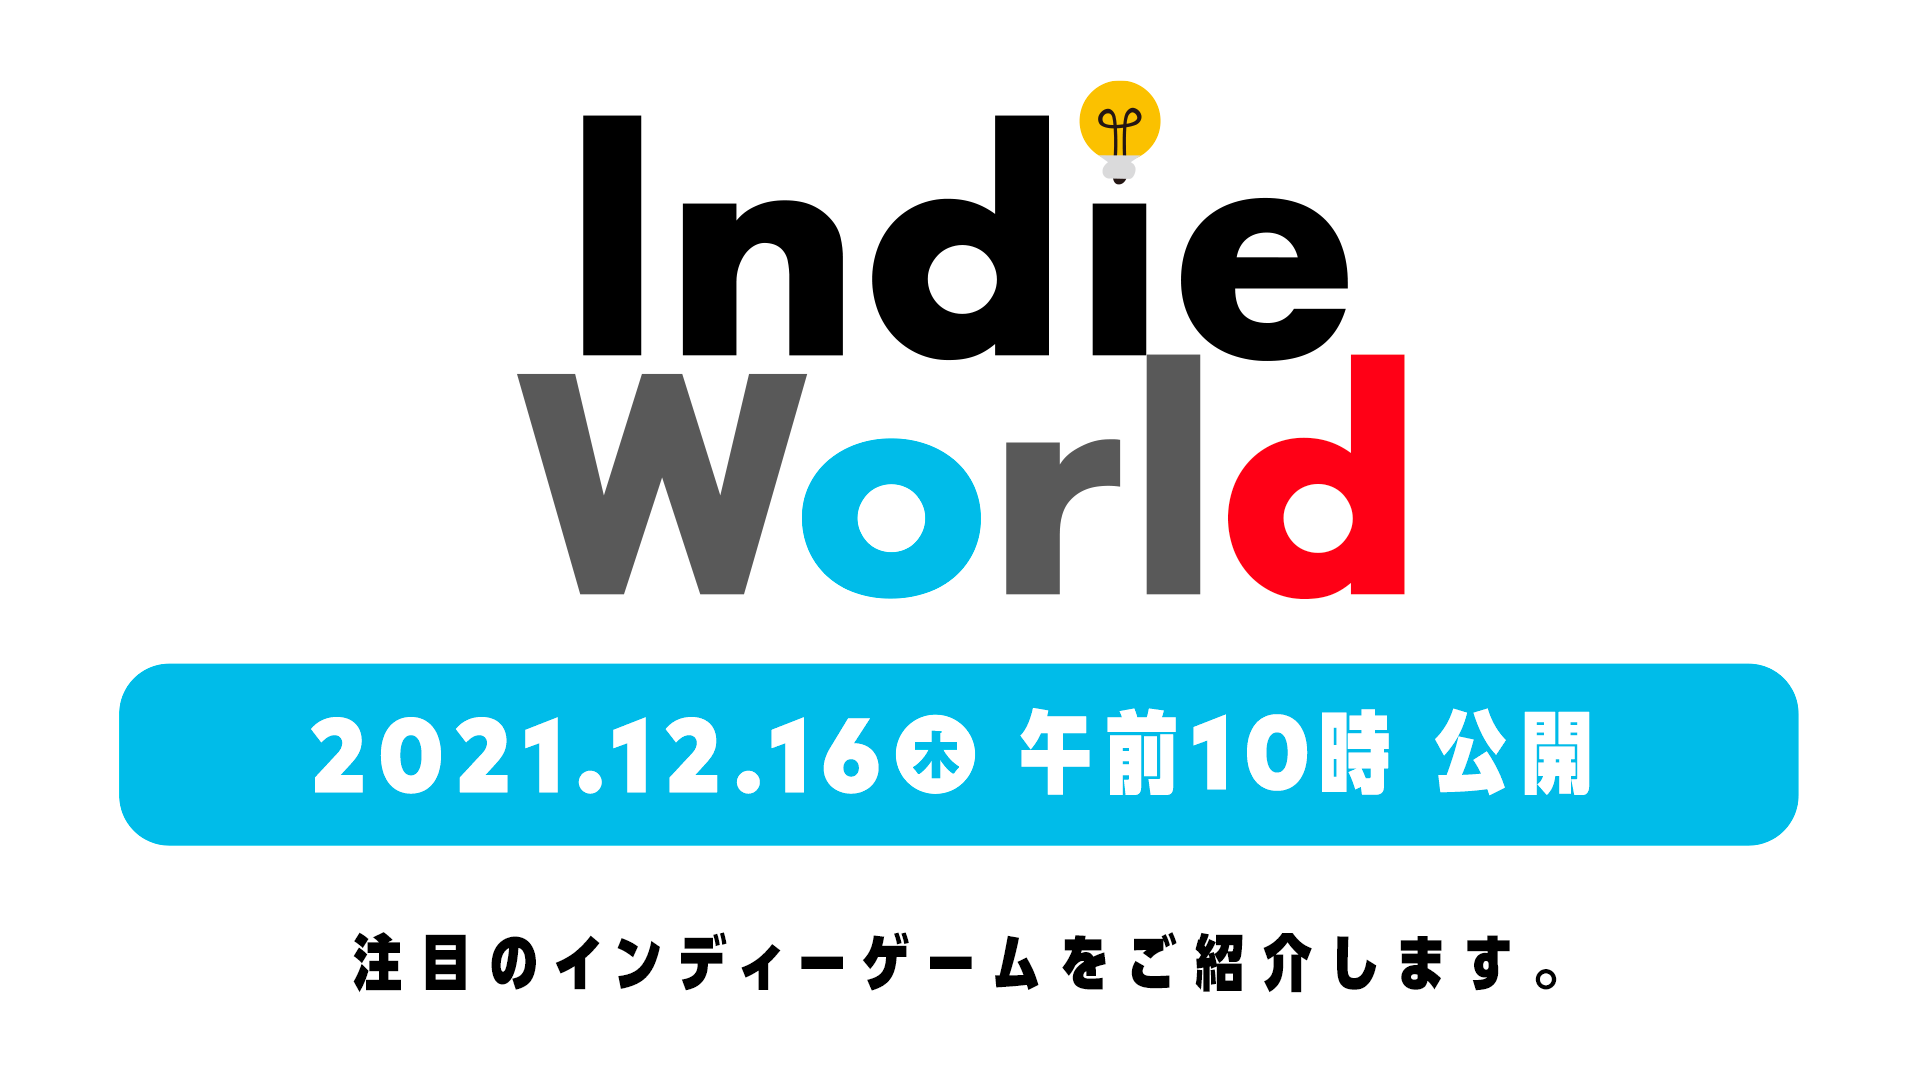 任天堂独立游戏直播发表会 12/16 9:00 登场 带来 Switch 注目独立游戏介绍